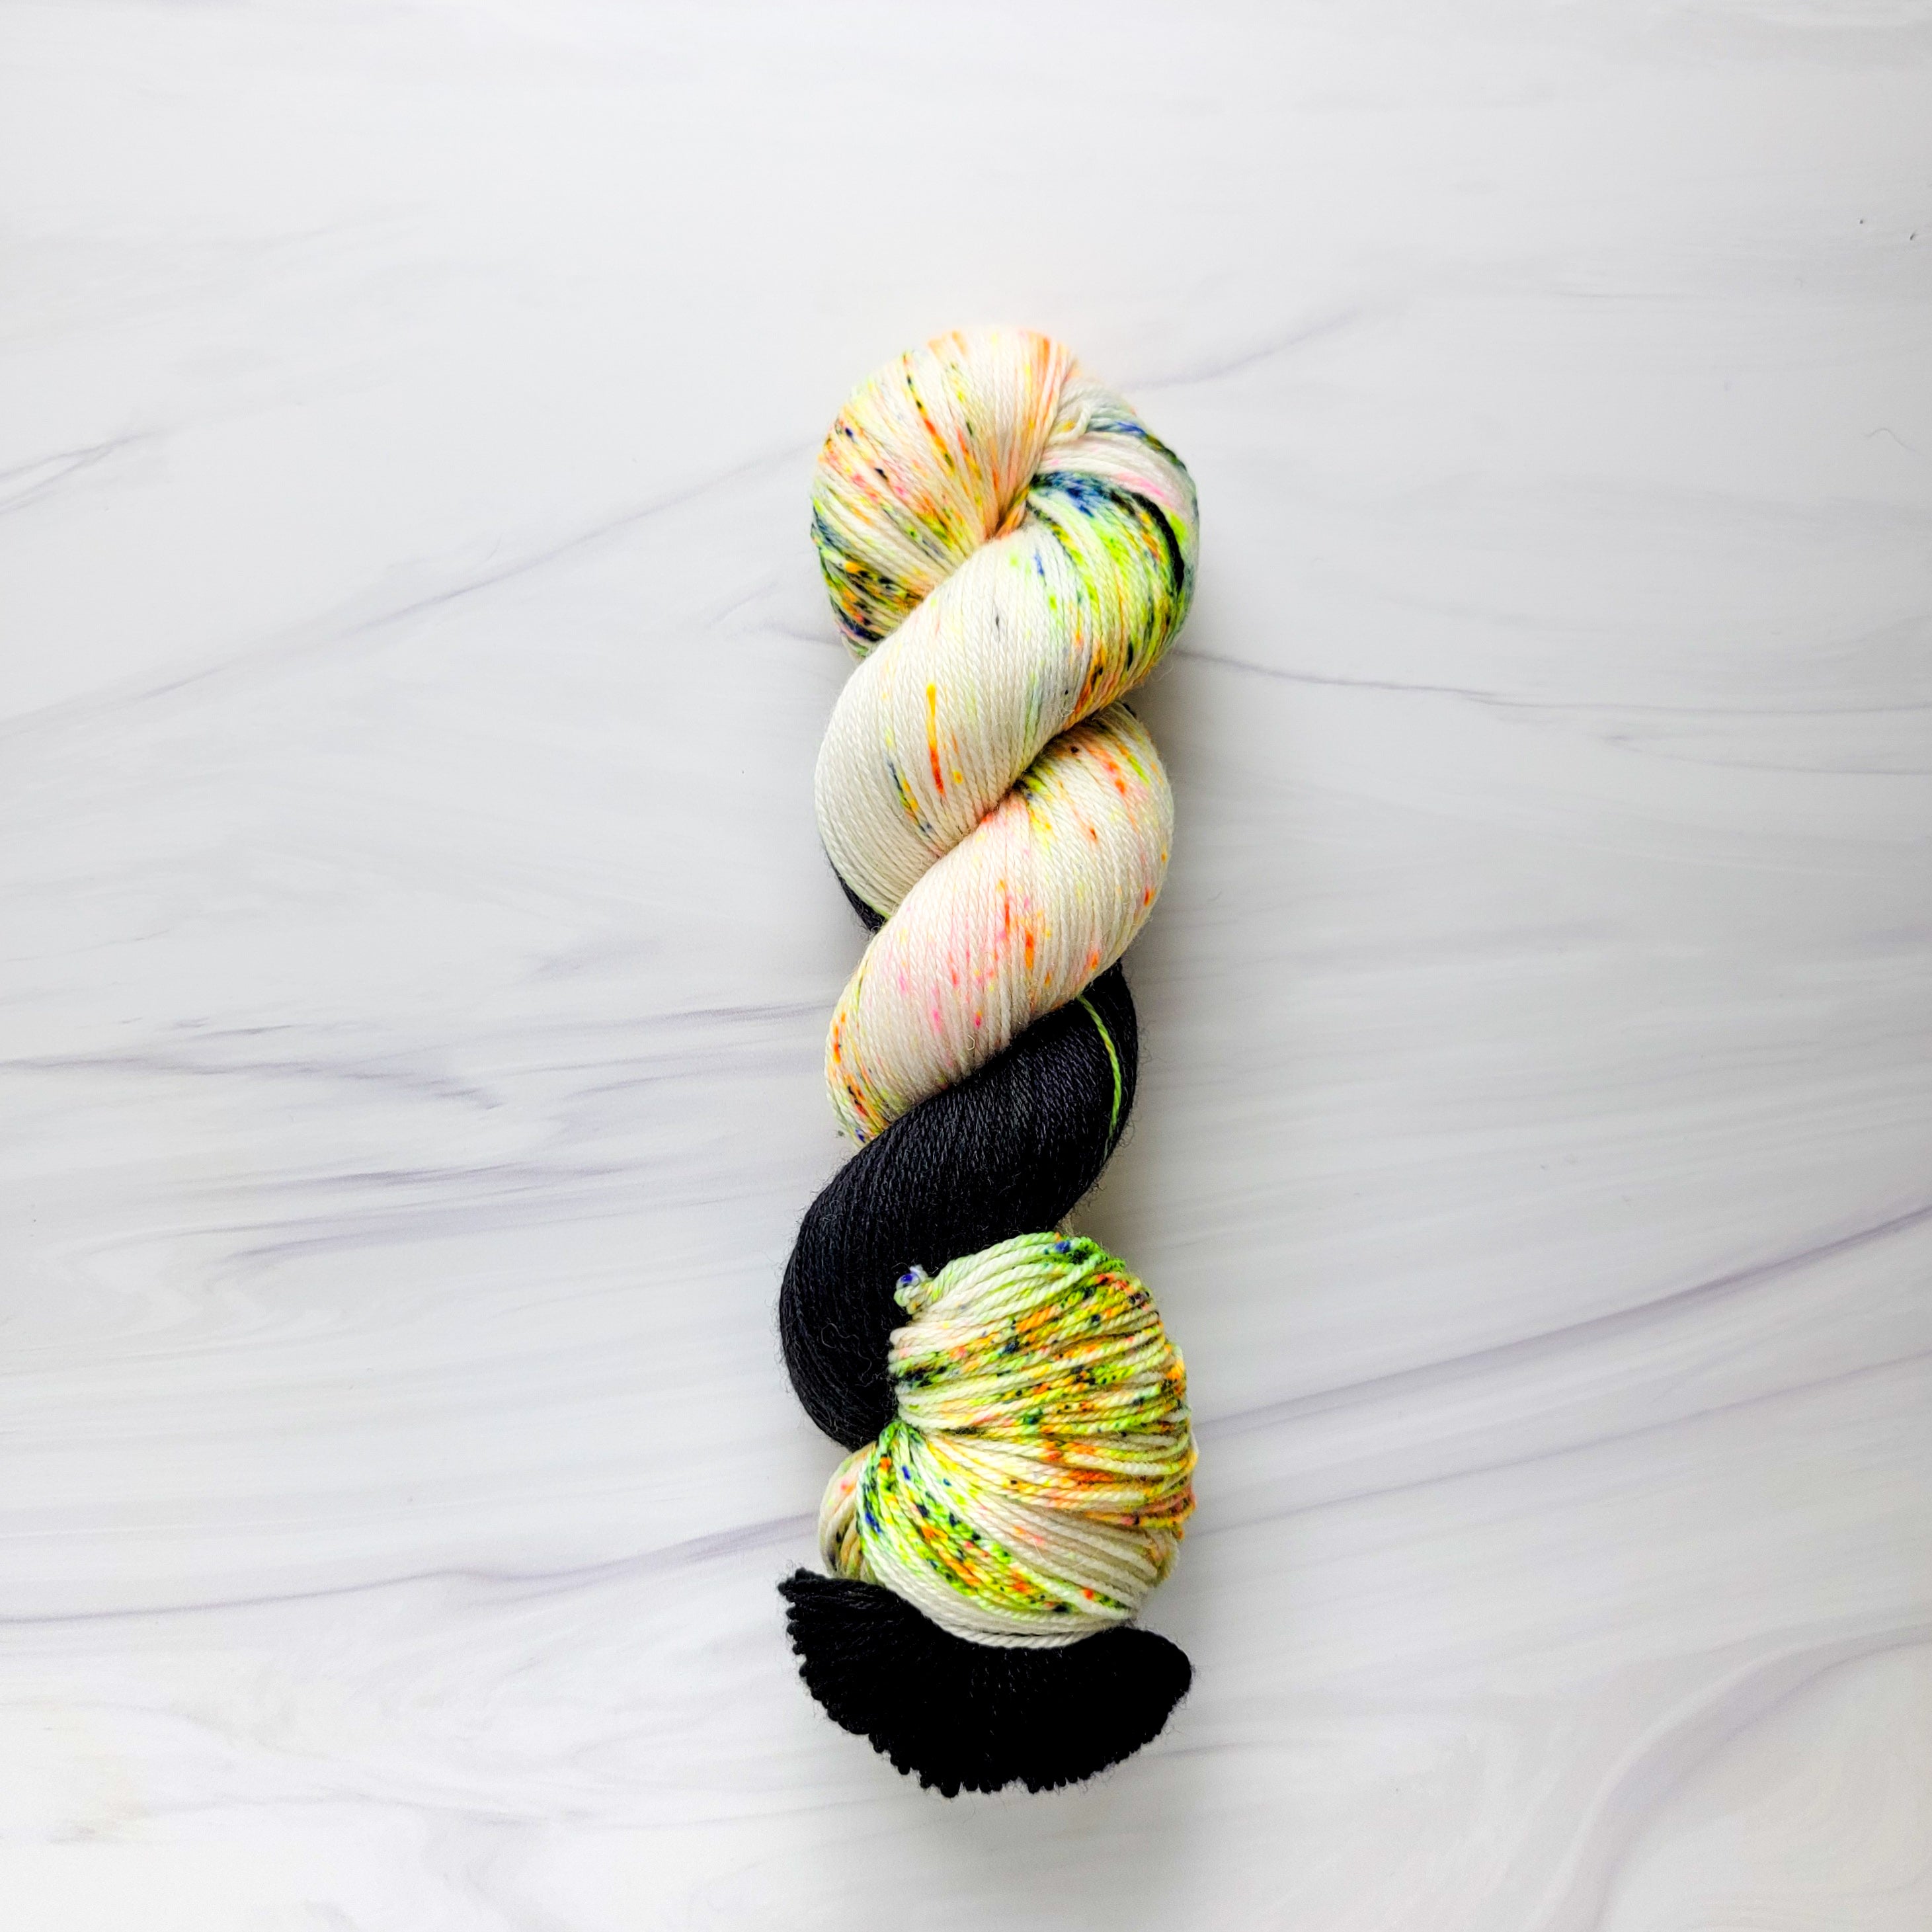 Glow - in- the - dark hand spun yarn for the win! : r/YarnAddicts